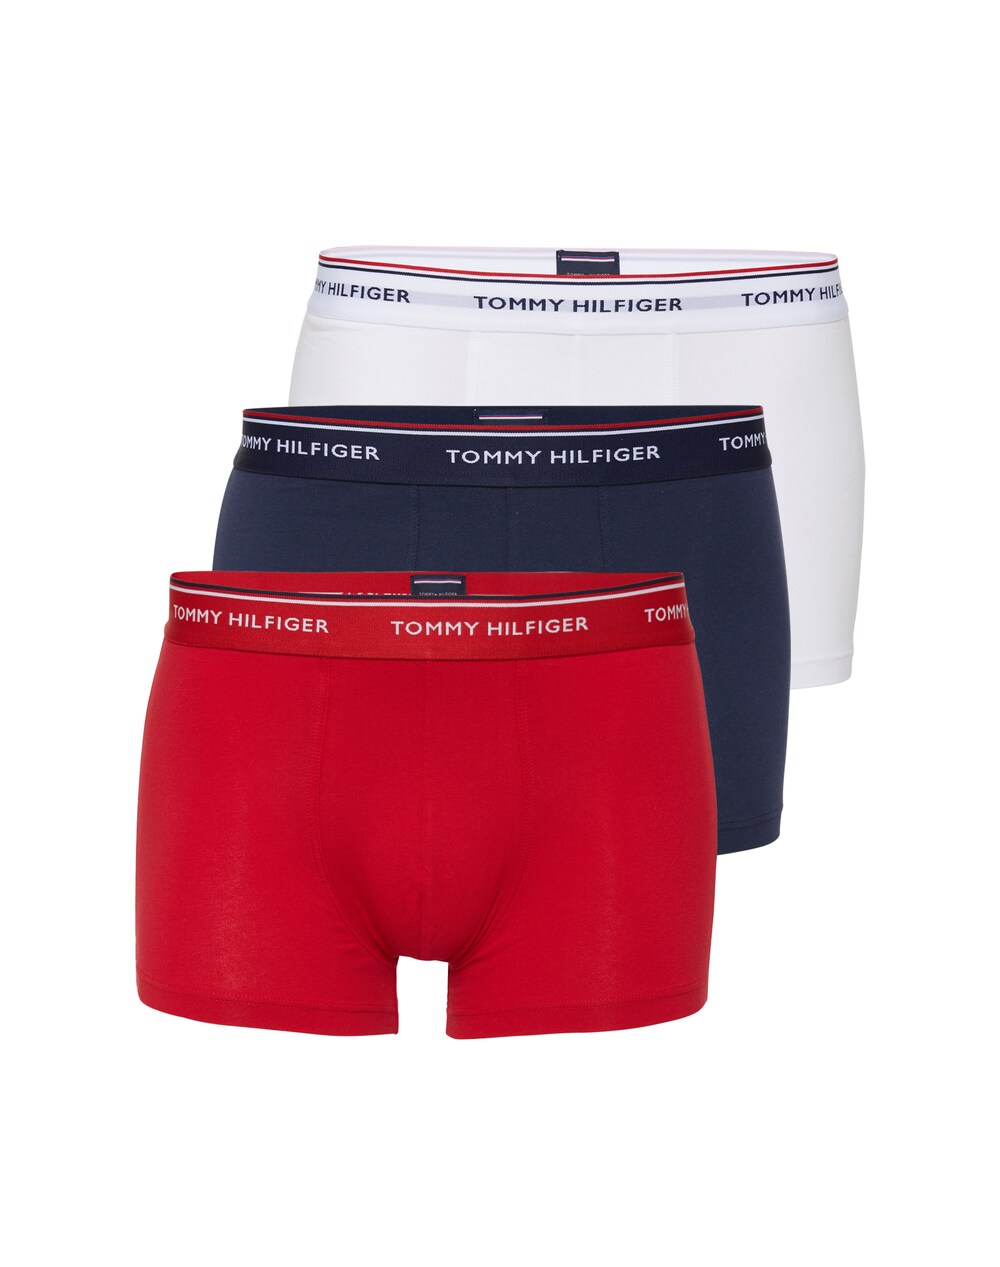 Обычные боксеры Tommy Hilfiger Underwear, темно-синий/красный/белый